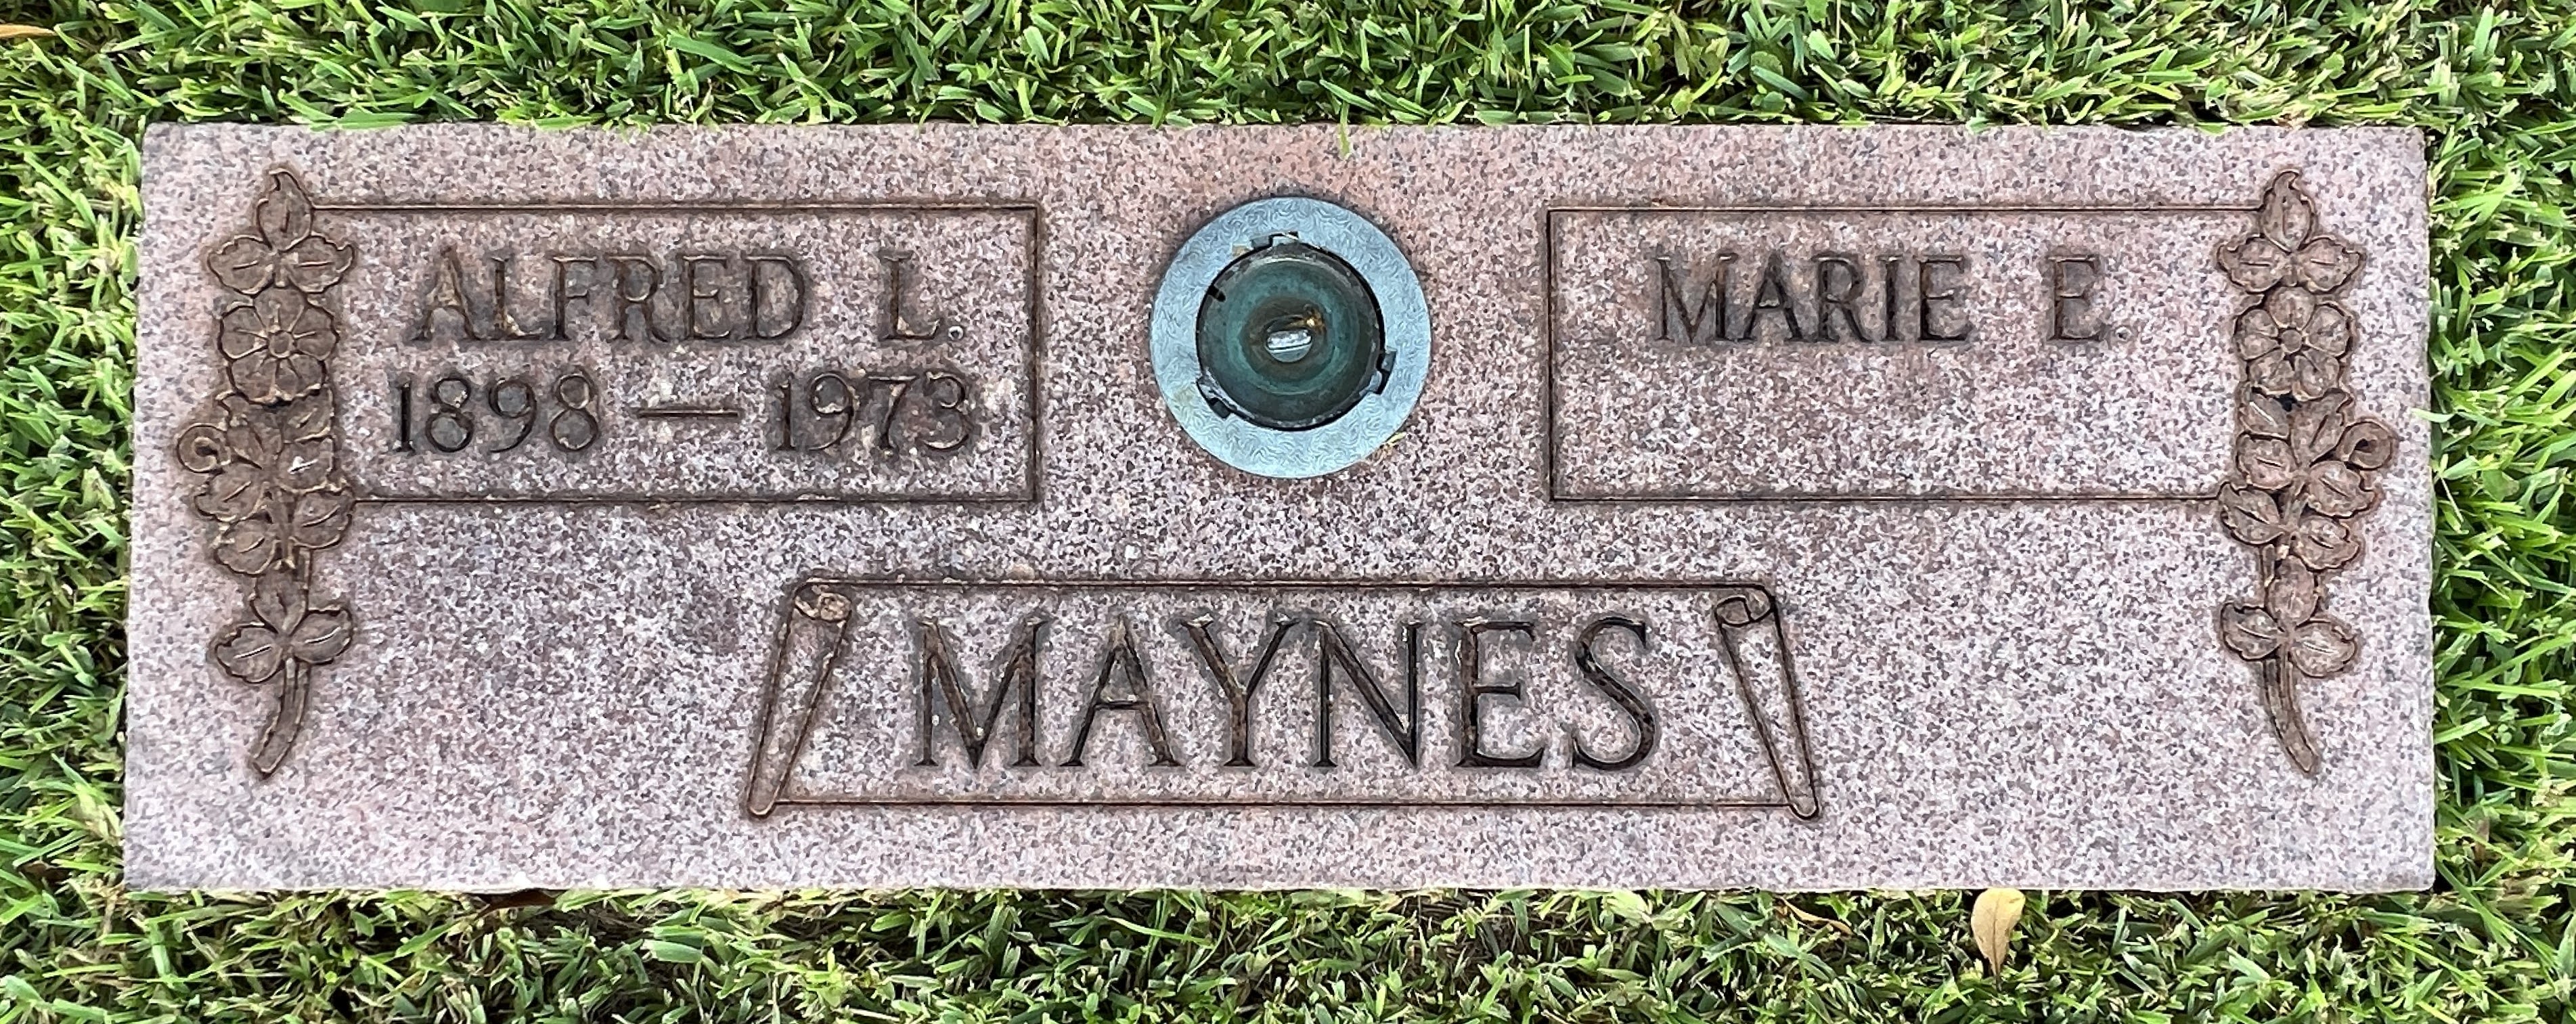 Marie E Maynes